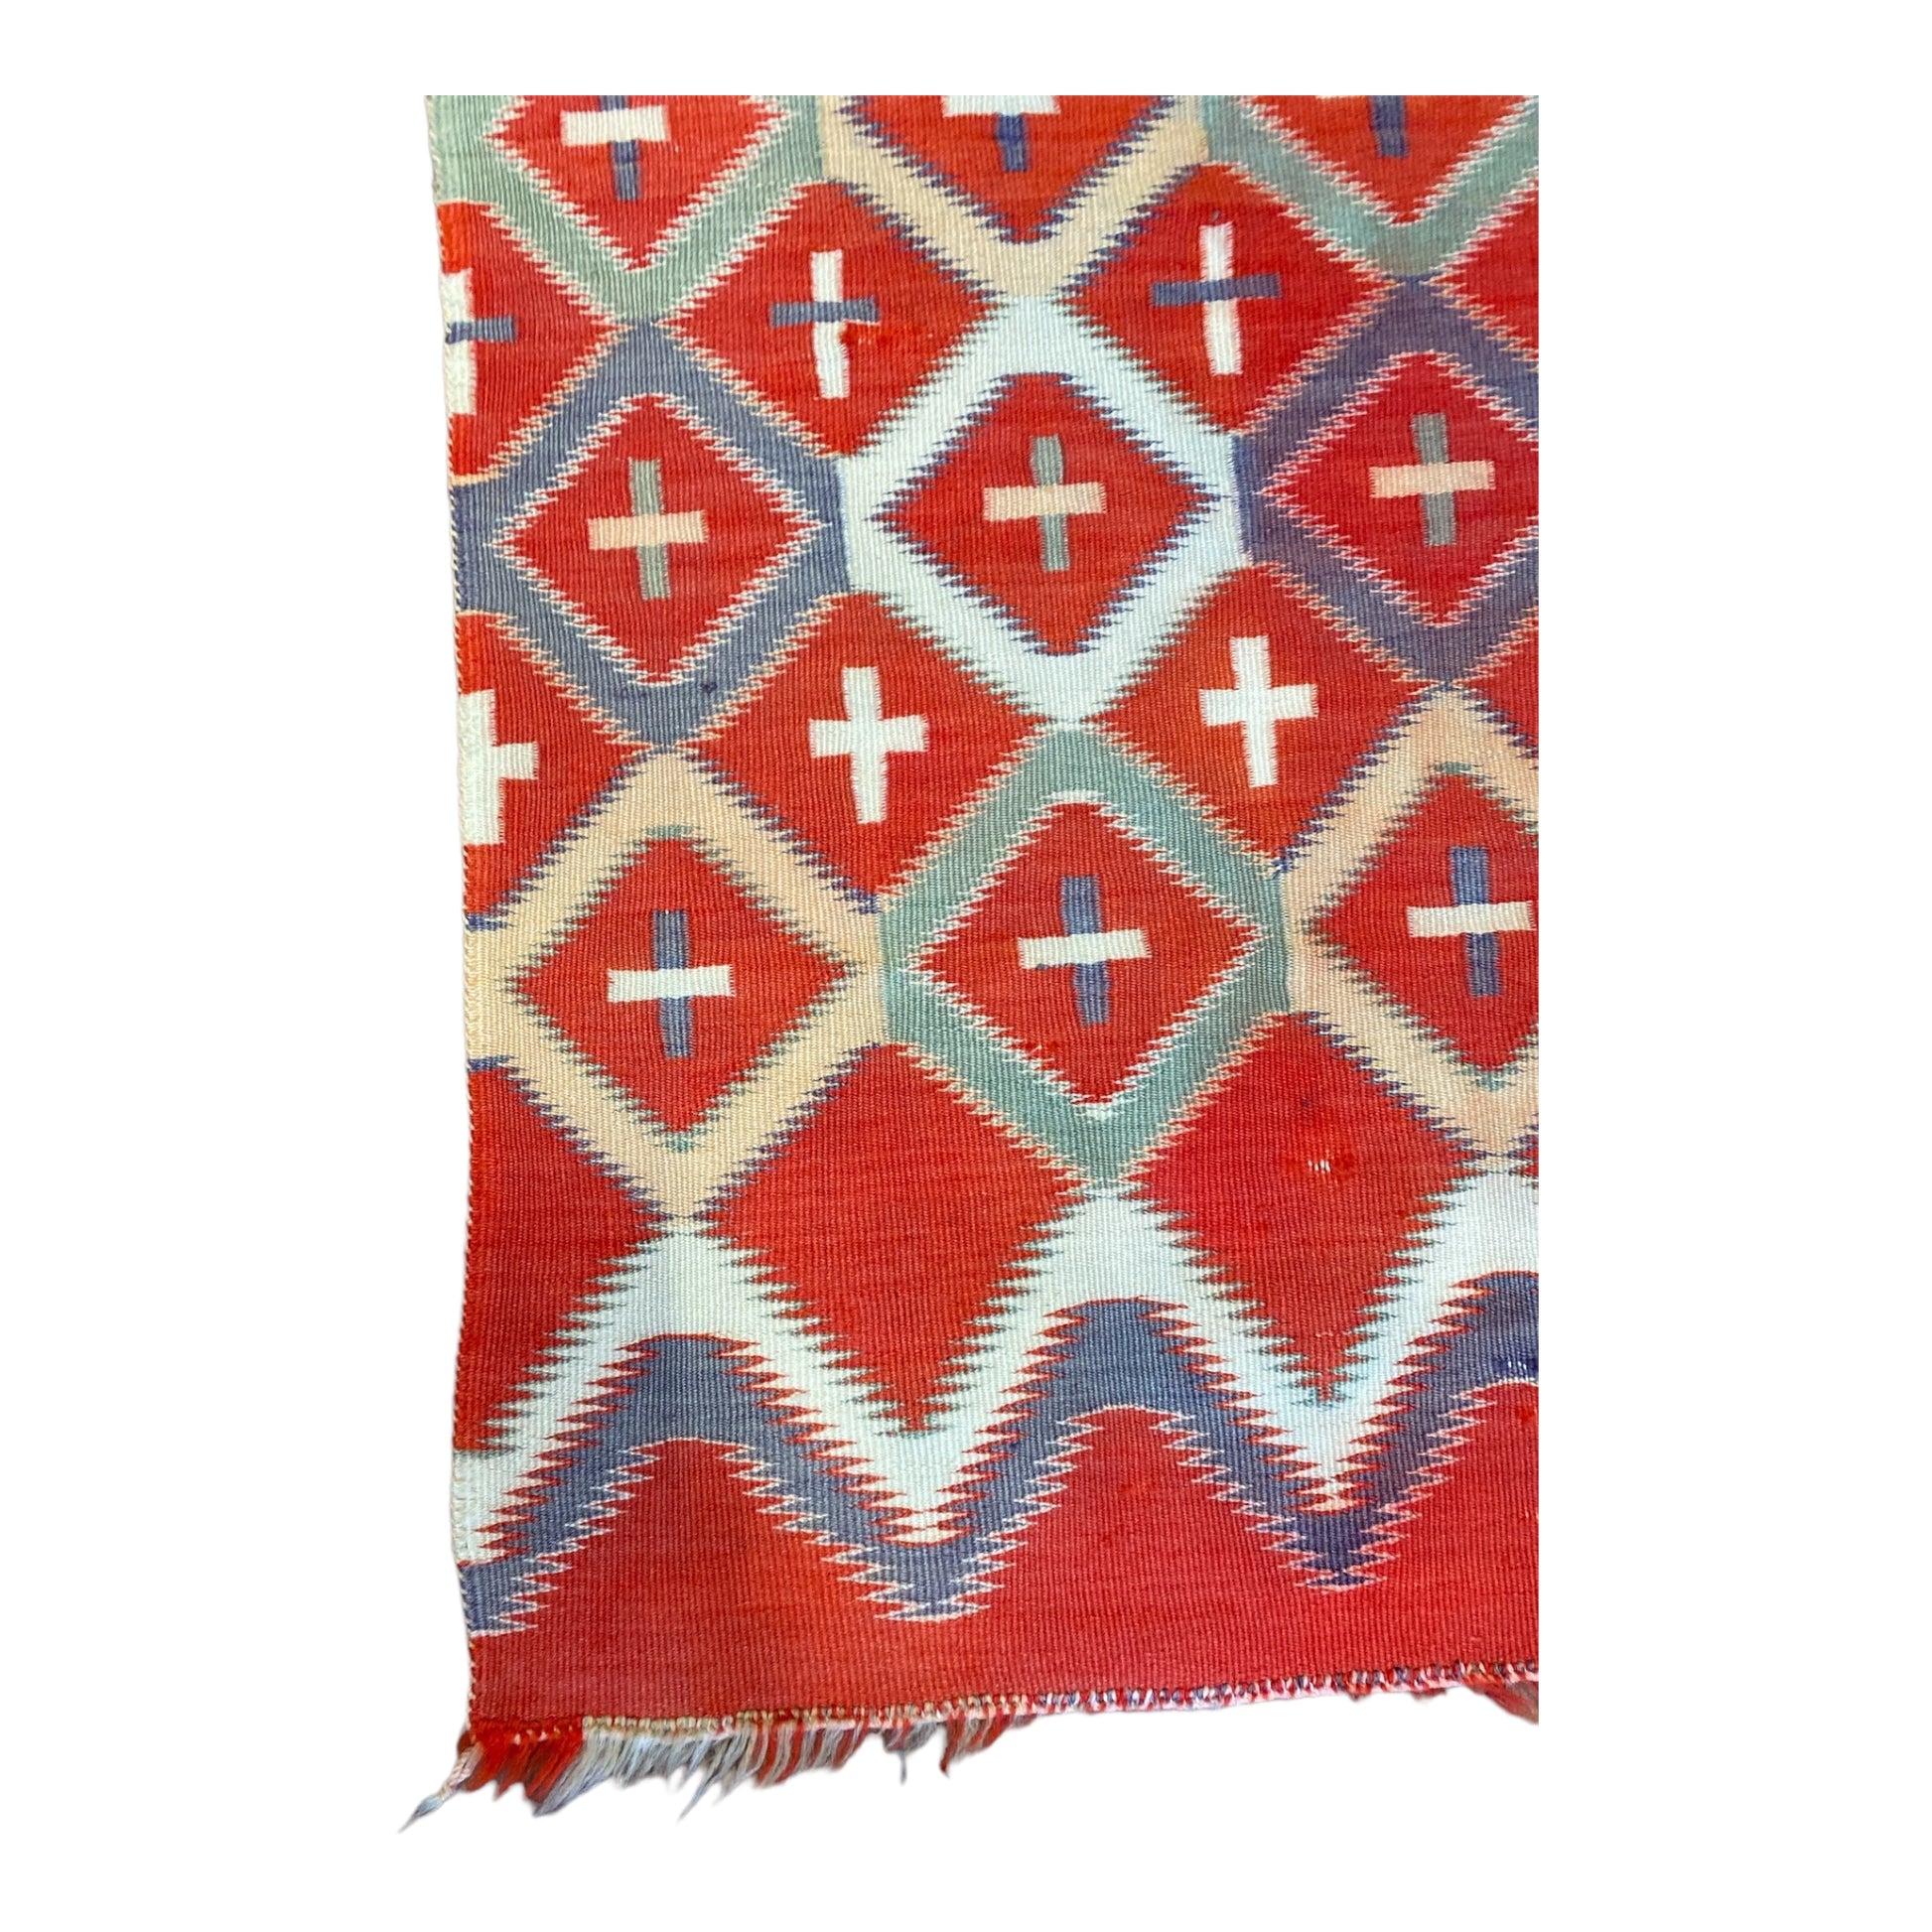 Antique Germantown Navajo Child's Blanket, navajo rug for sale, authentic navajo weaving, telluride furnishings, telluride art gallery